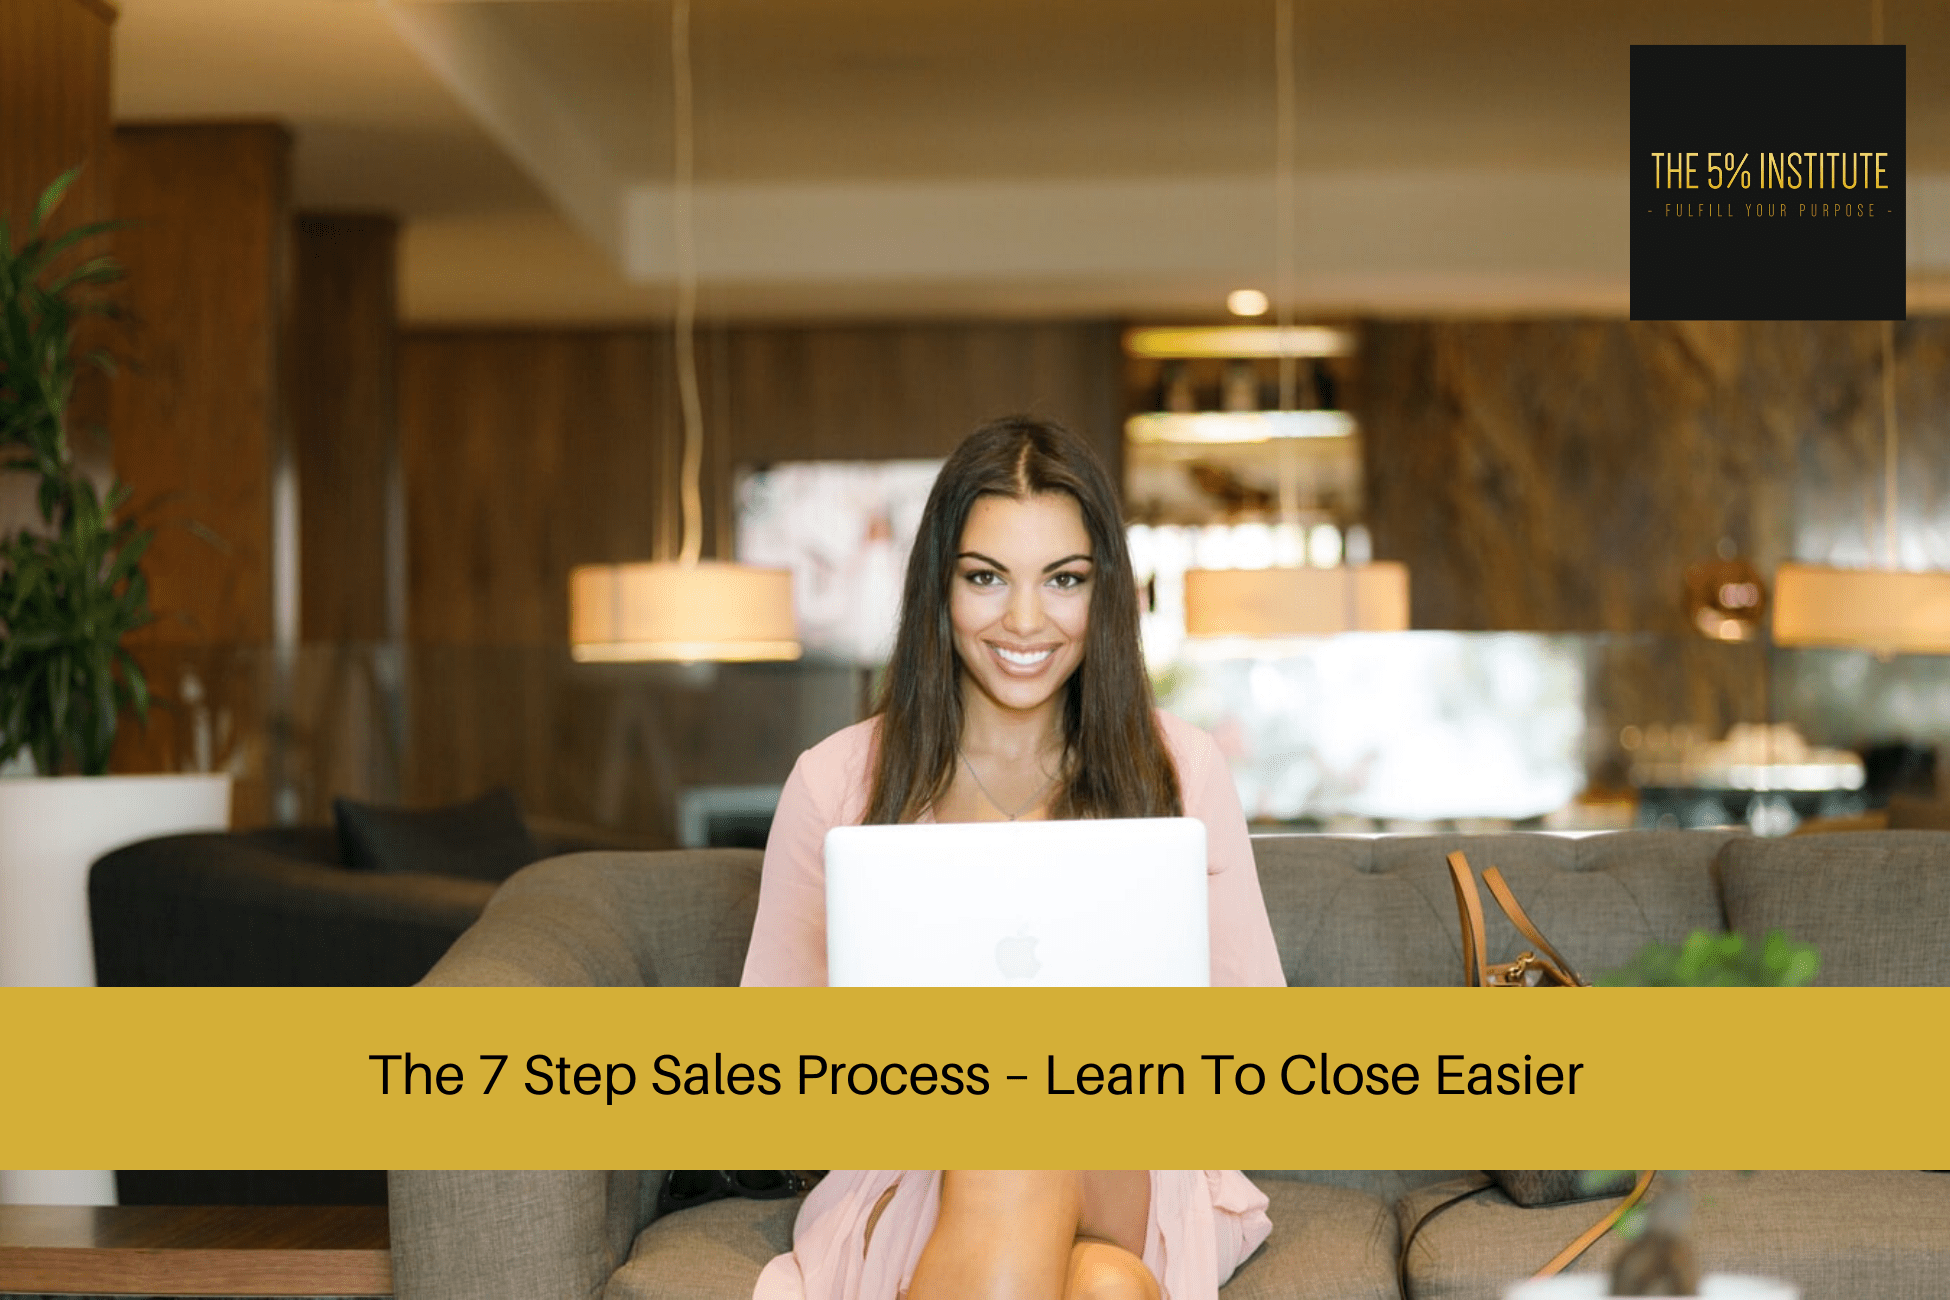 7 Step Sales Process